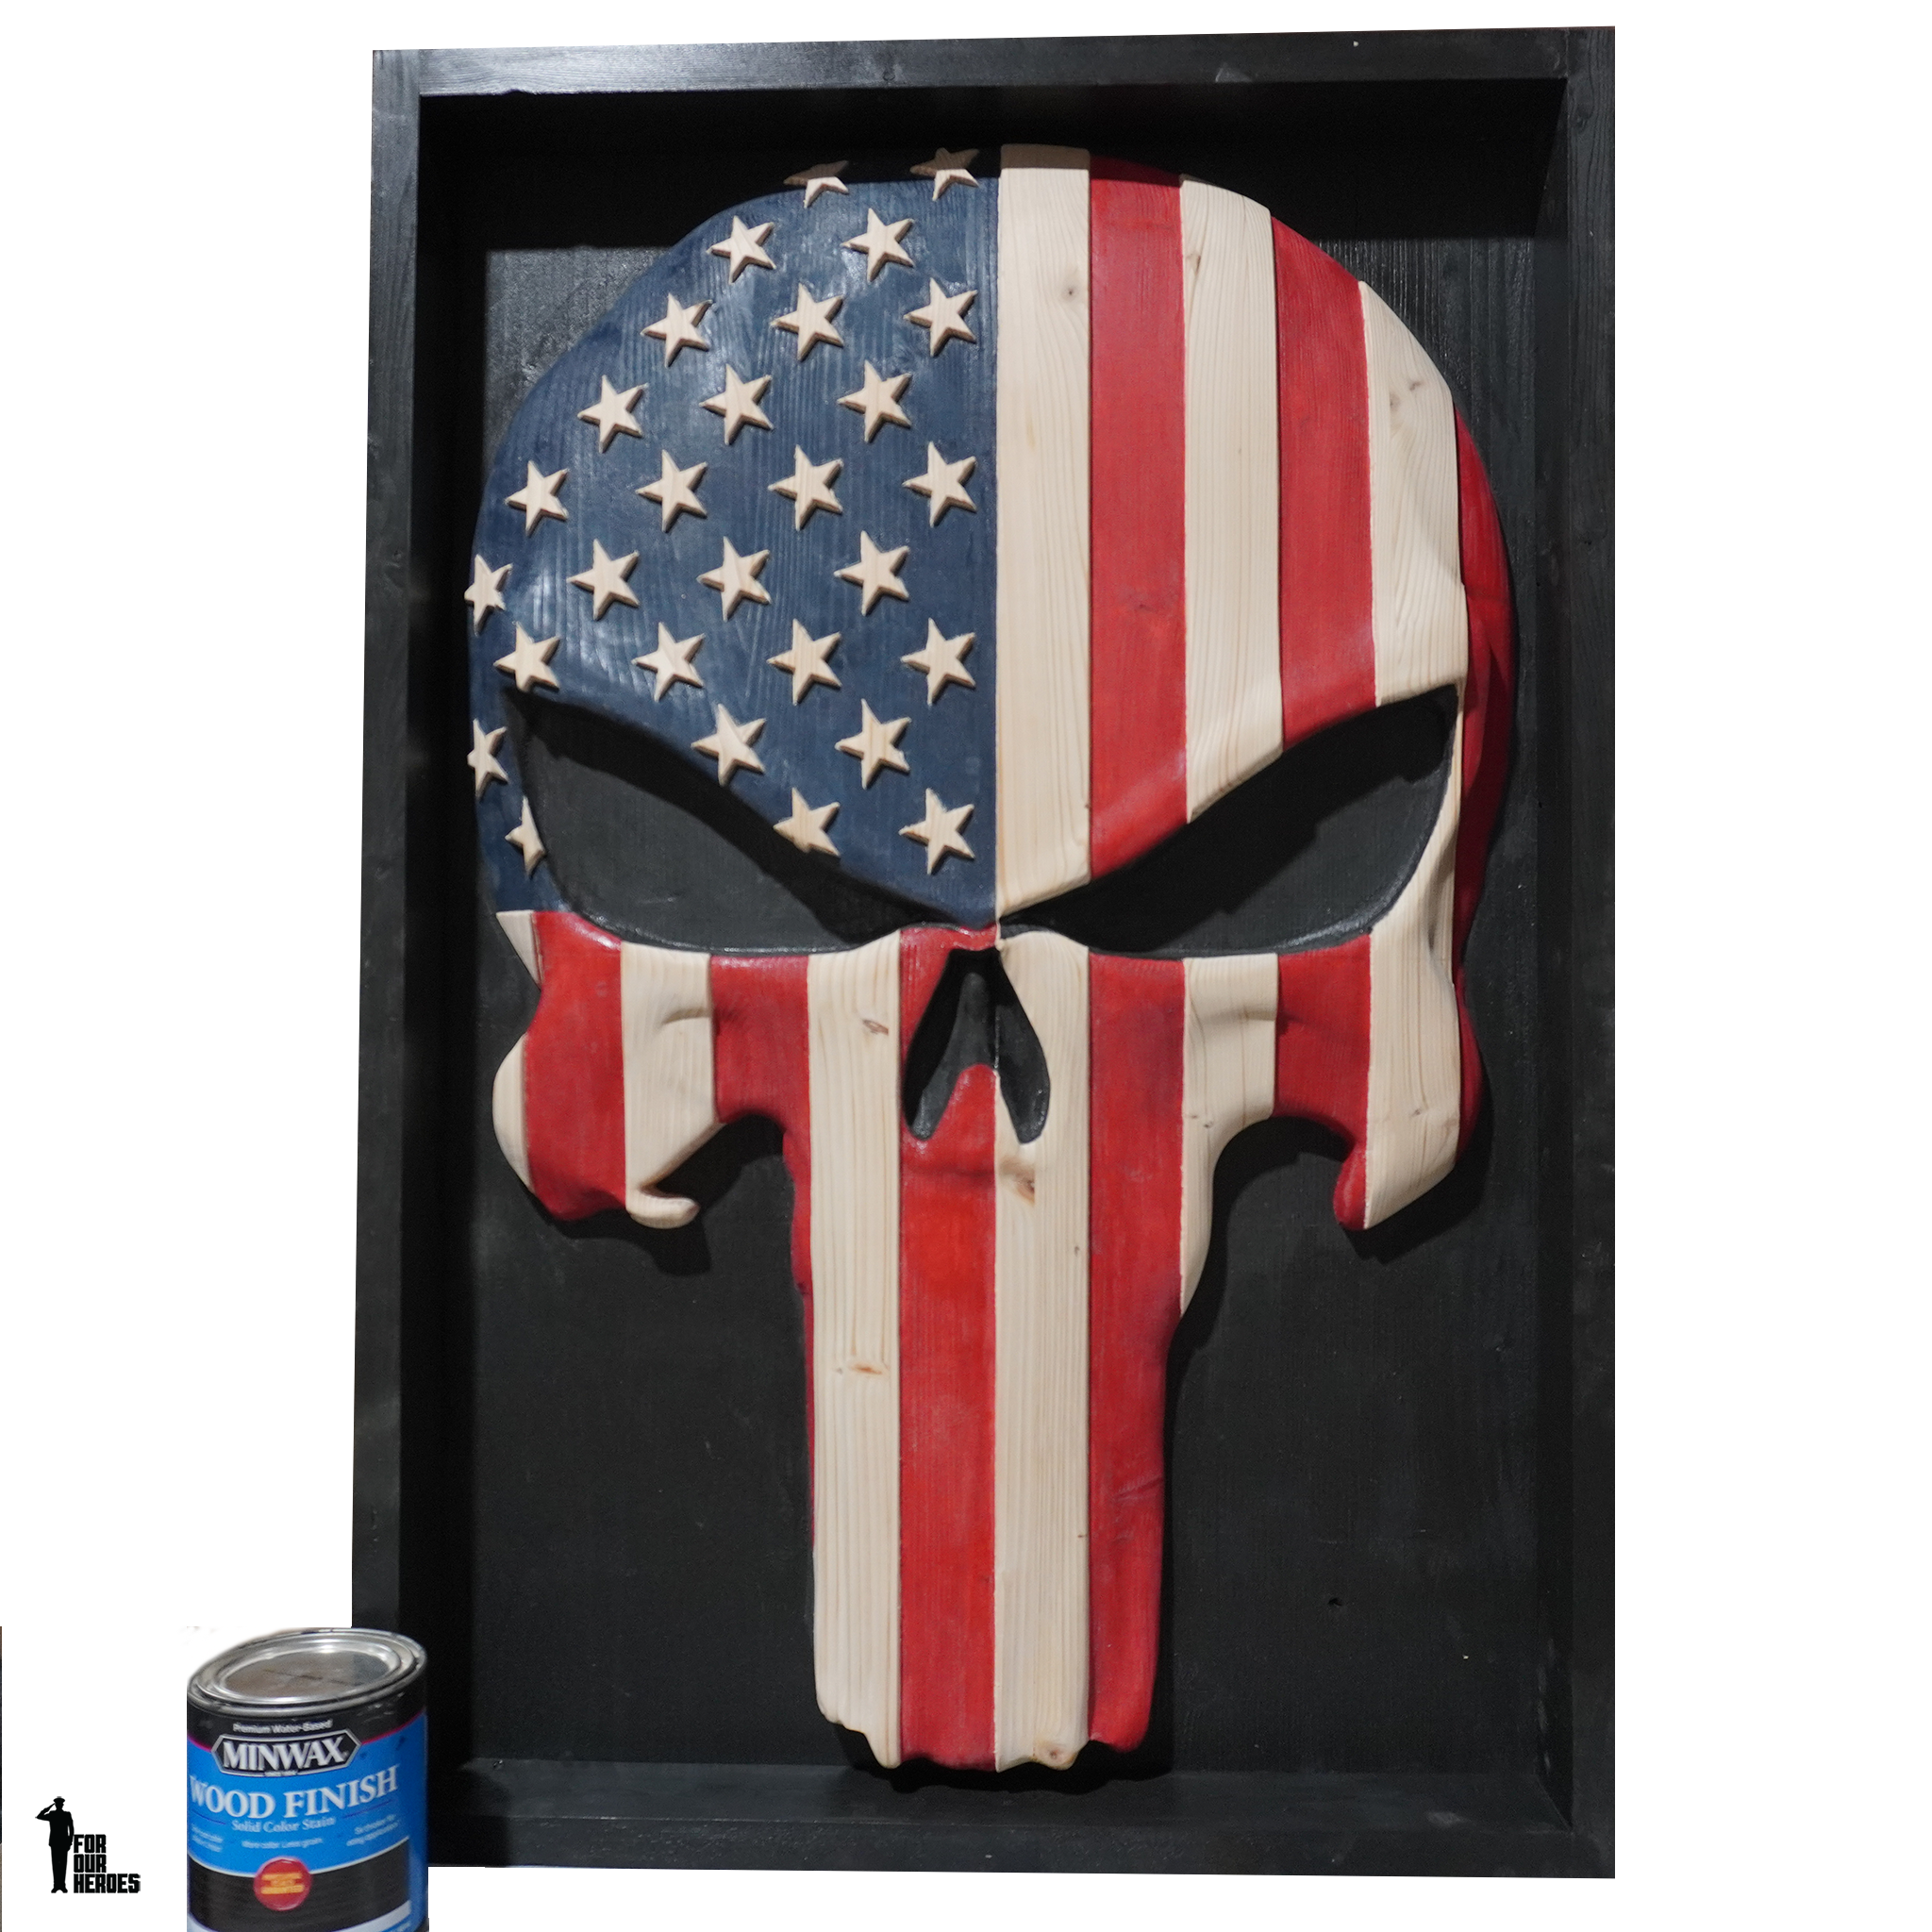 3D SKULL BONE MASK Wooden American Flag